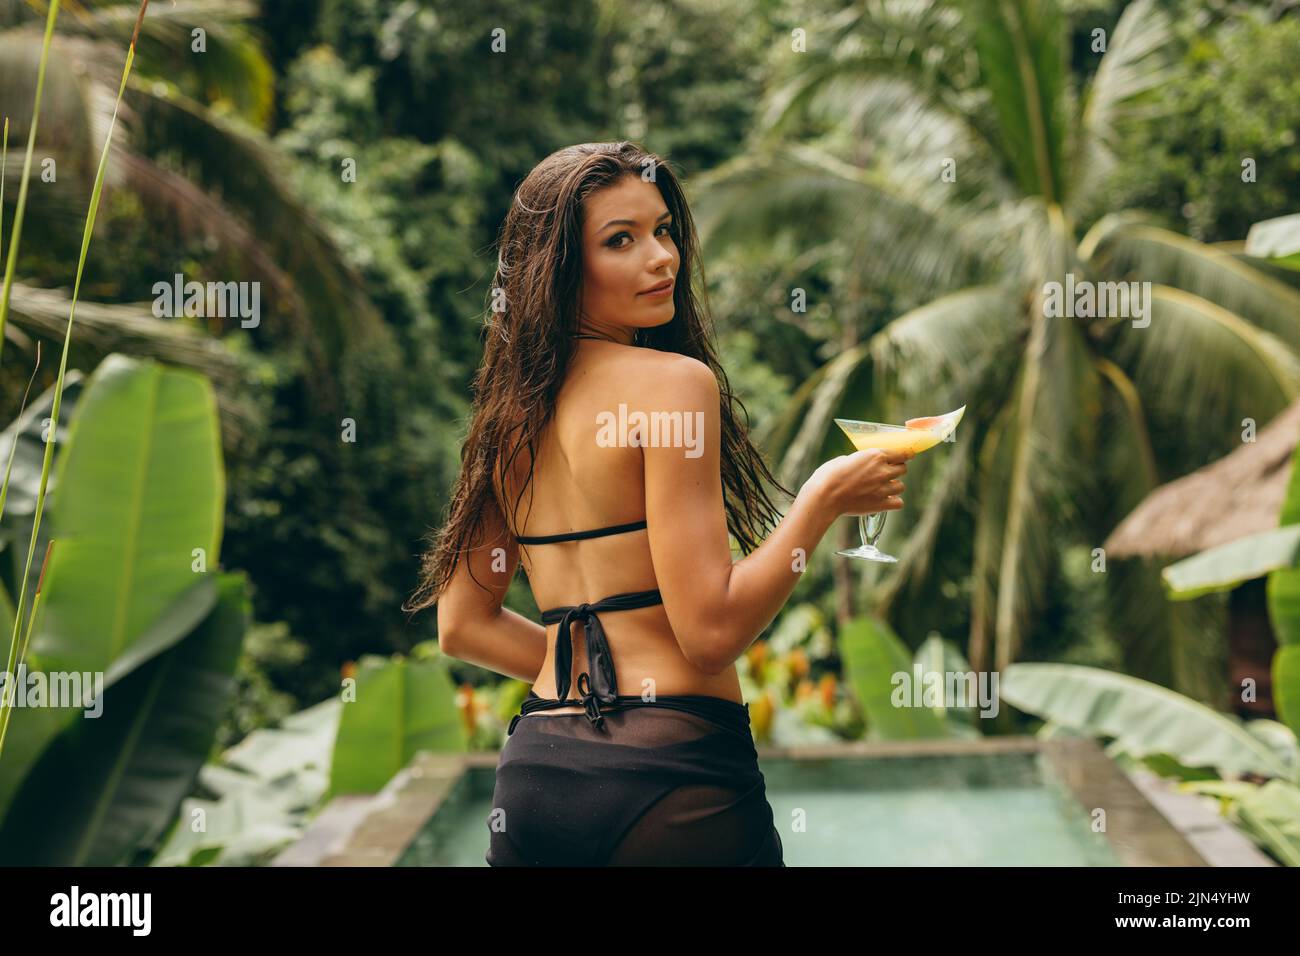 Photo en plein air d'une jeune femme avec un cocktail au bord de la piscine, elle porte un bikini noir et regarde l'appareil photo. Banque D'Images